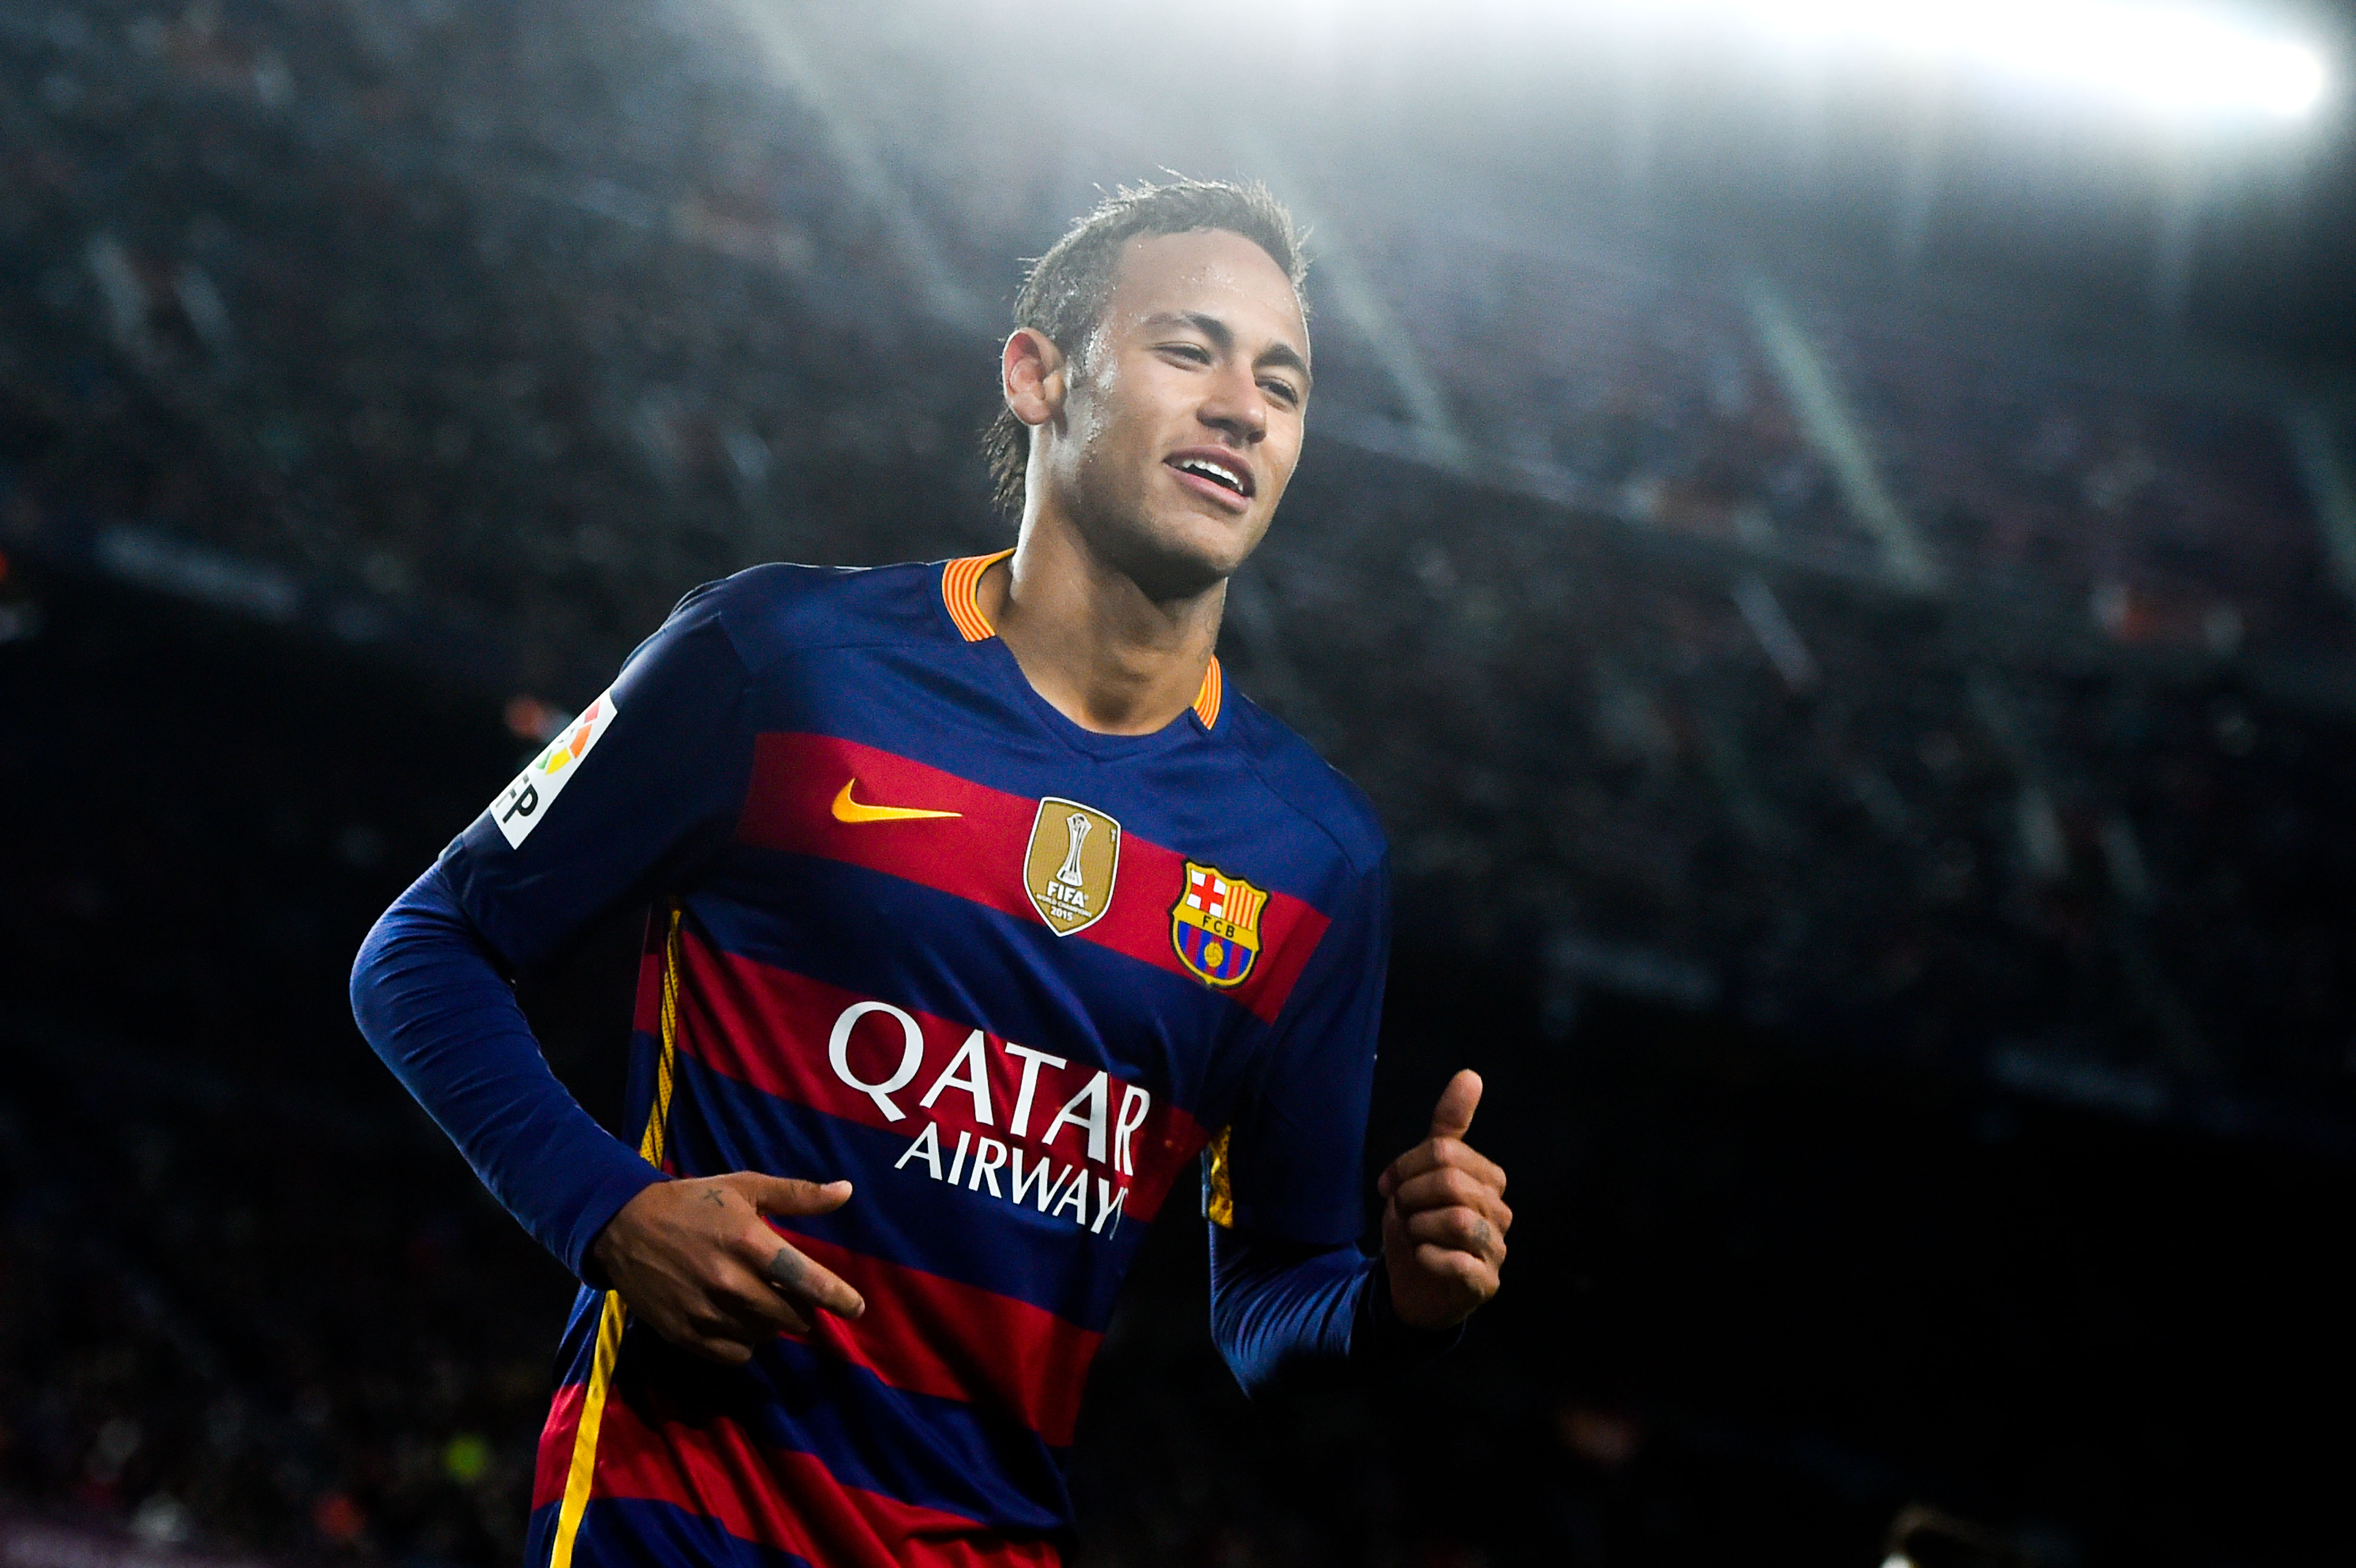 Neymar Ballon D Or 2019 , HD Wallpaper & Backgrounds